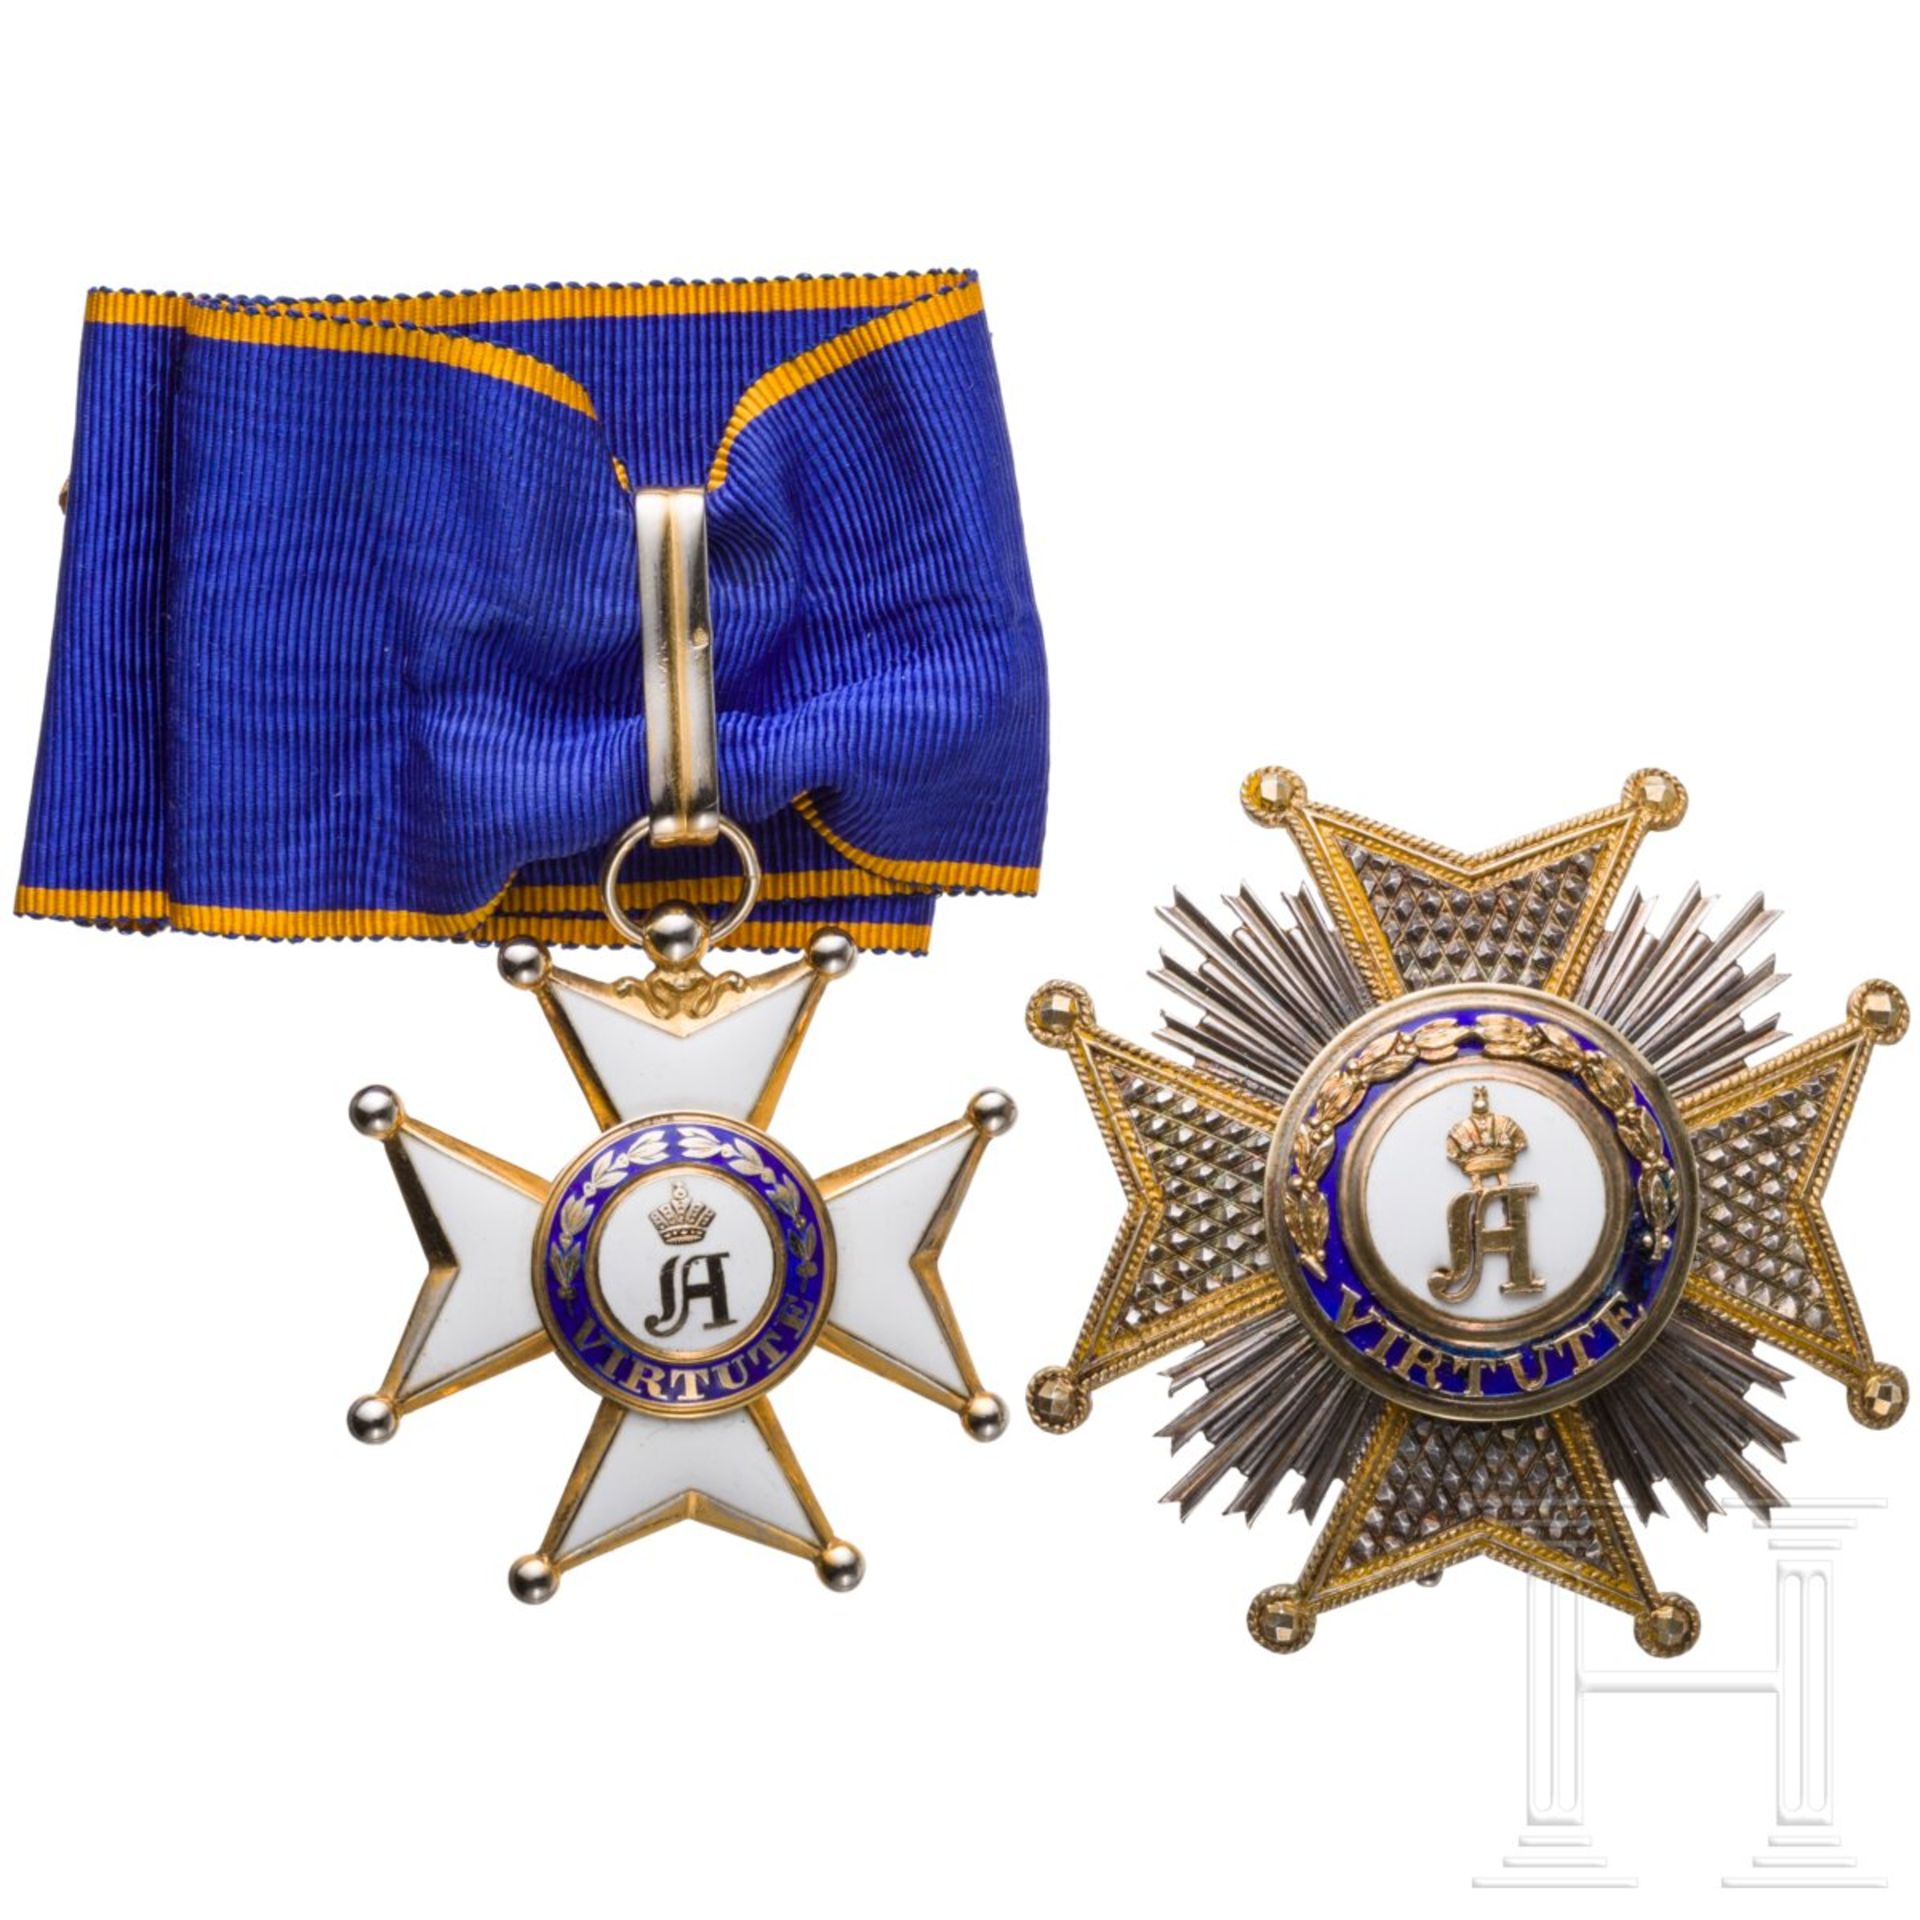 Militär- und Zivildienst-Orden Adolphs von Nassau - Großoffiziersset, Luxemburg, 20. Jhdt. - Bild 2 aus 6